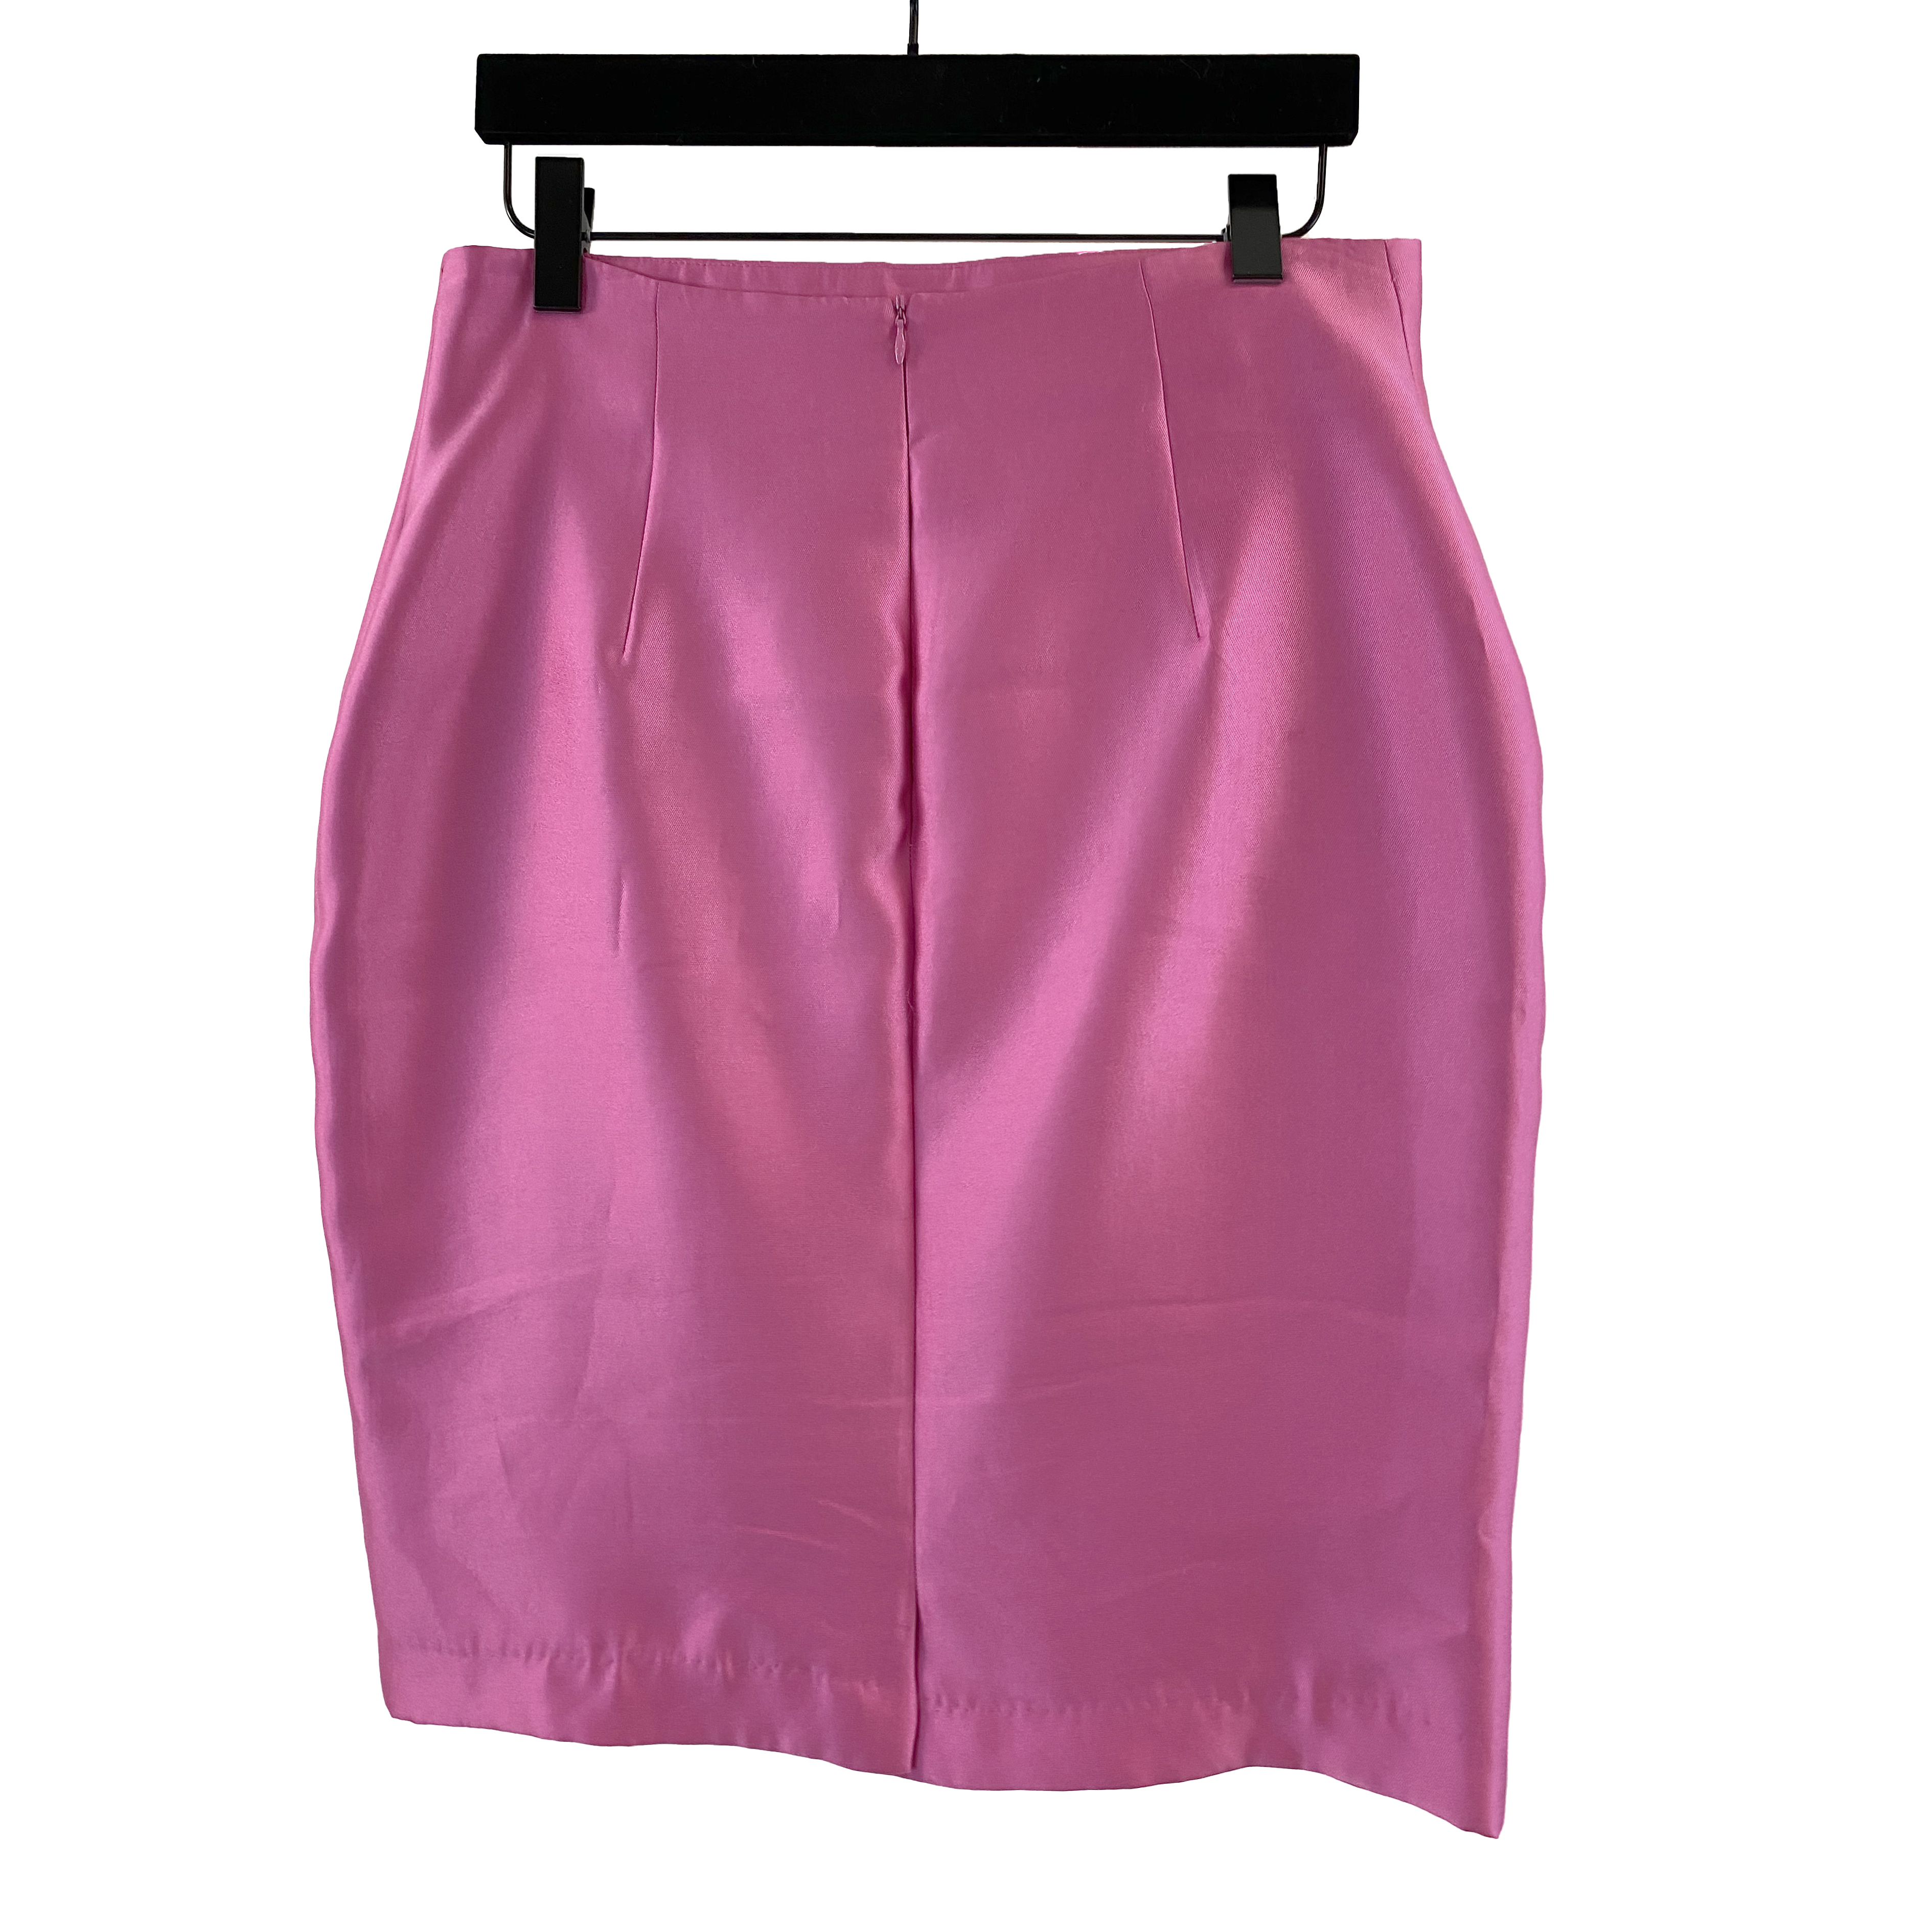 Carla Zampatti Hot Pink Skirt